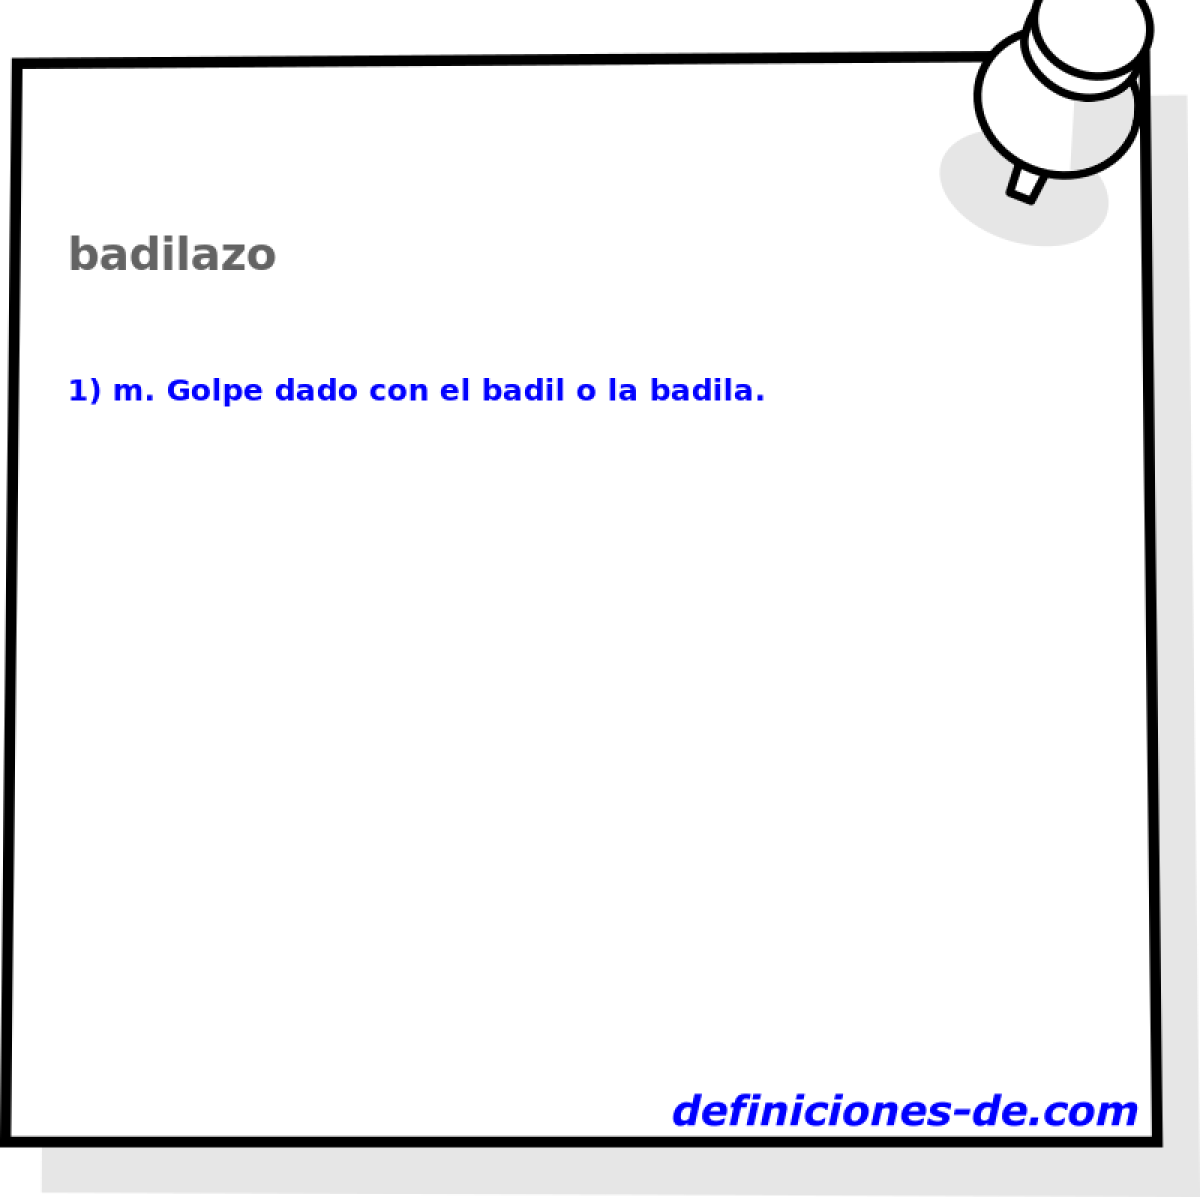 badilazo 